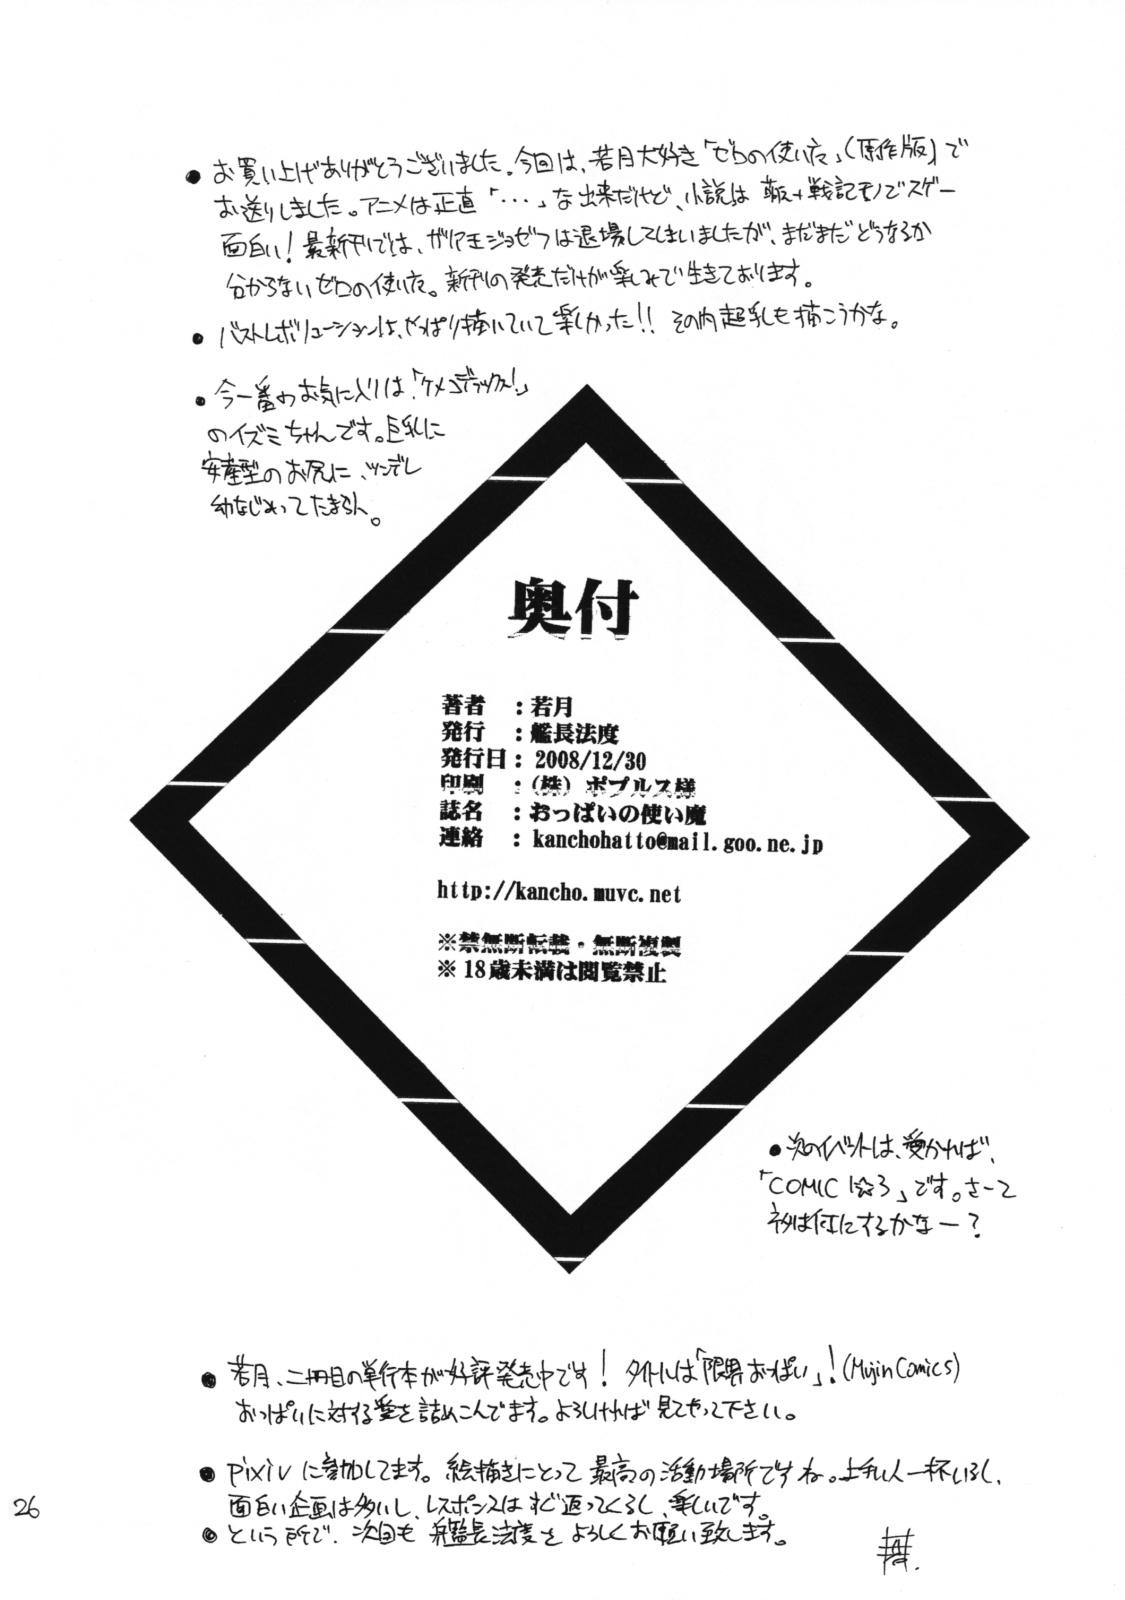 Mofos Oppai no Tsukaima - Zero no tsukaima Pussysex - Page 25